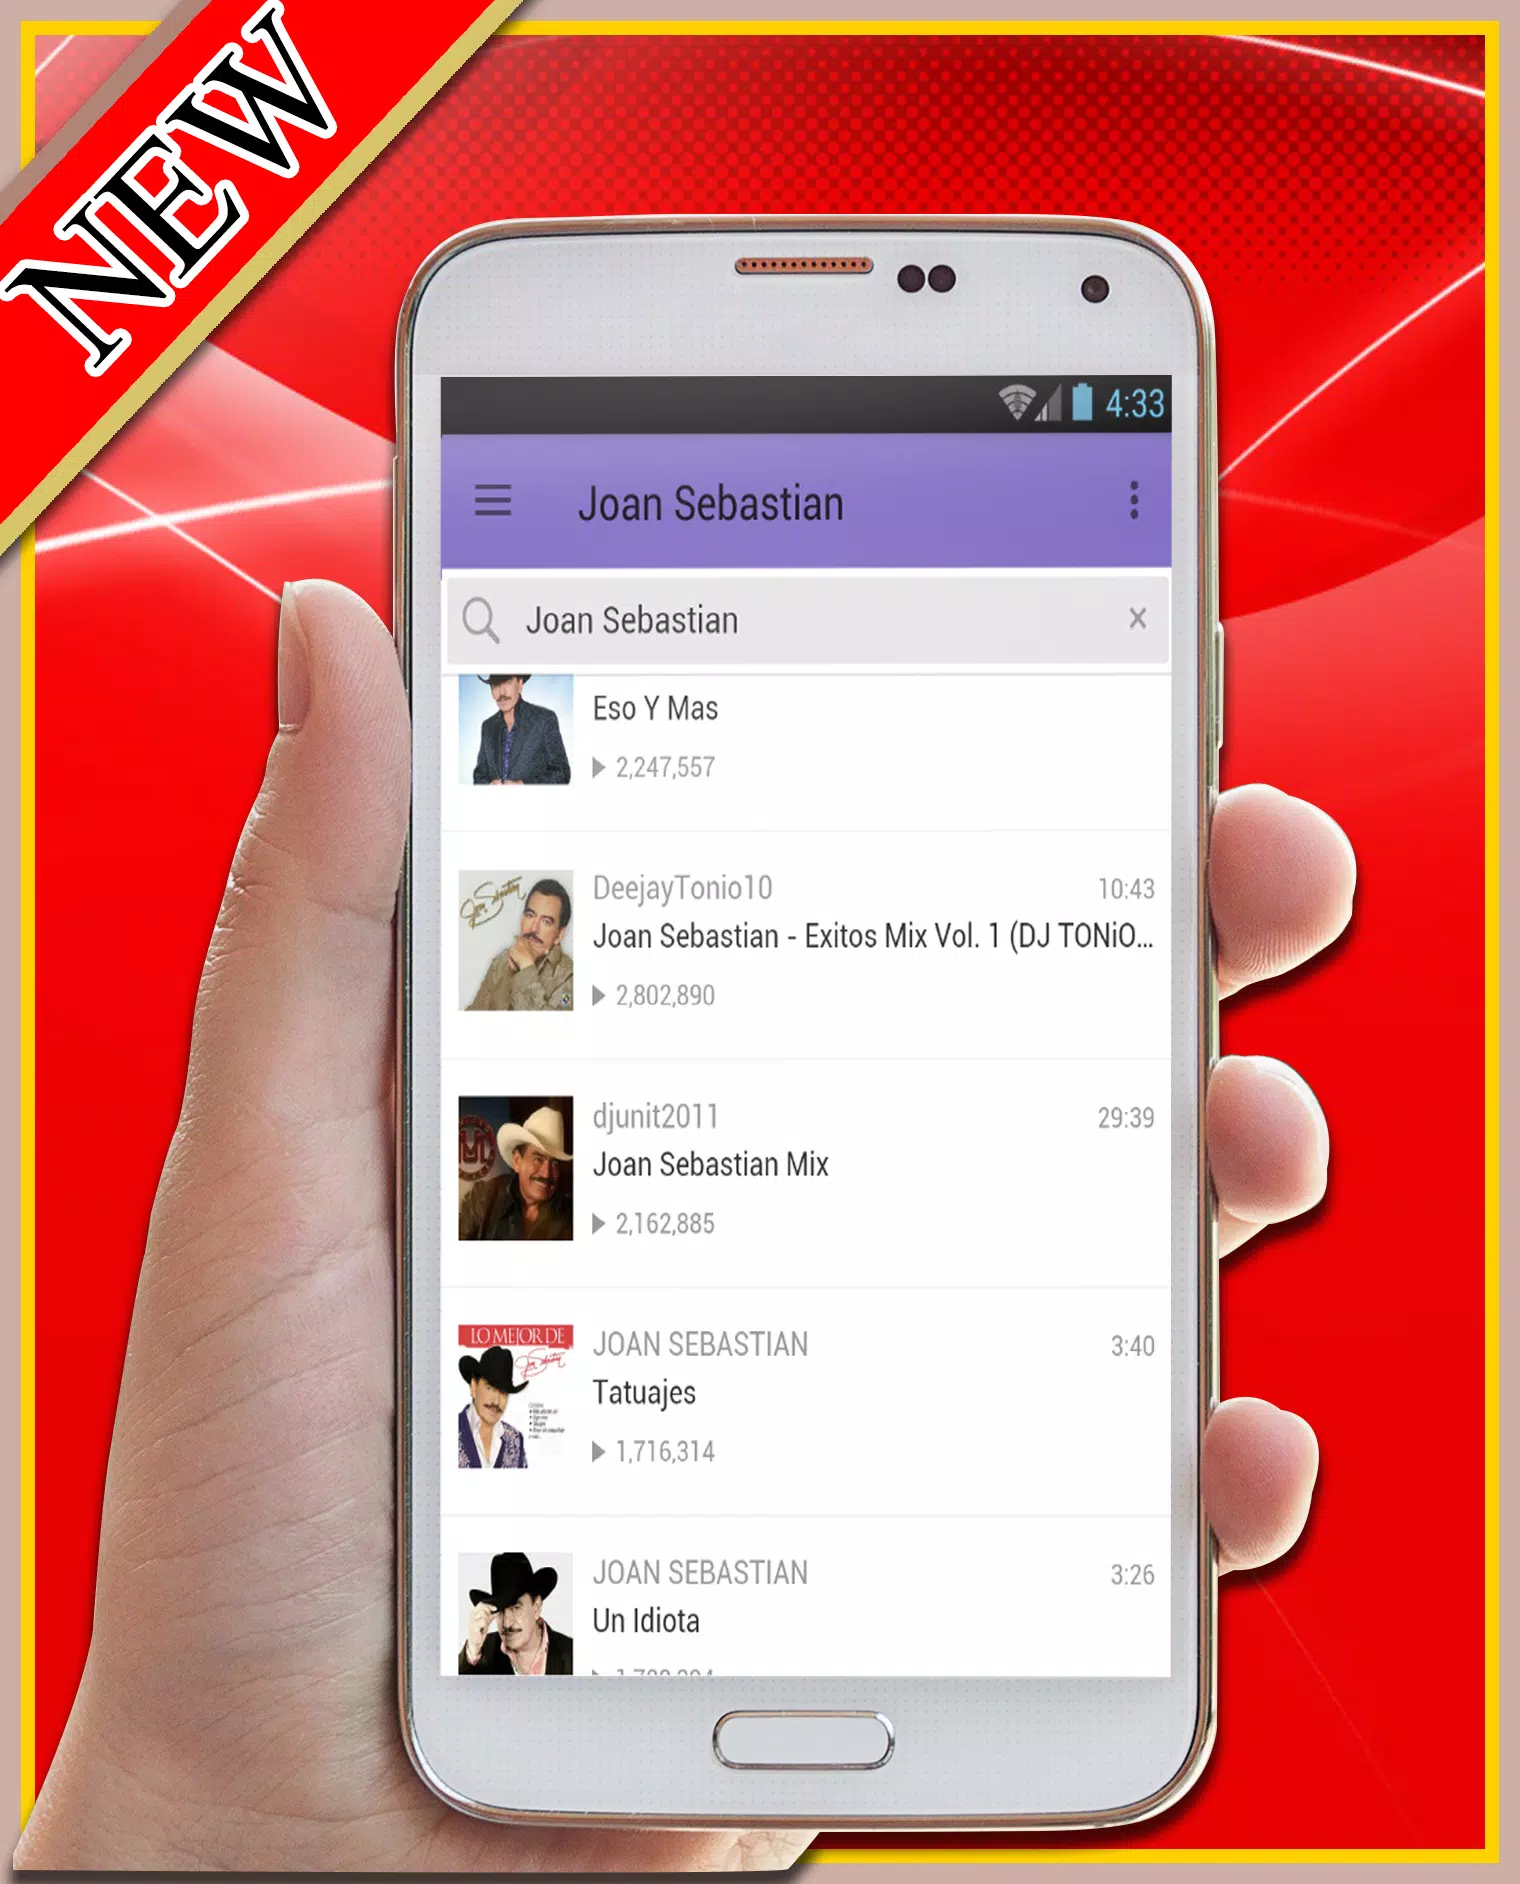 Joan Sebastian - Me Gustas (canciones y letras) APK for Android Download